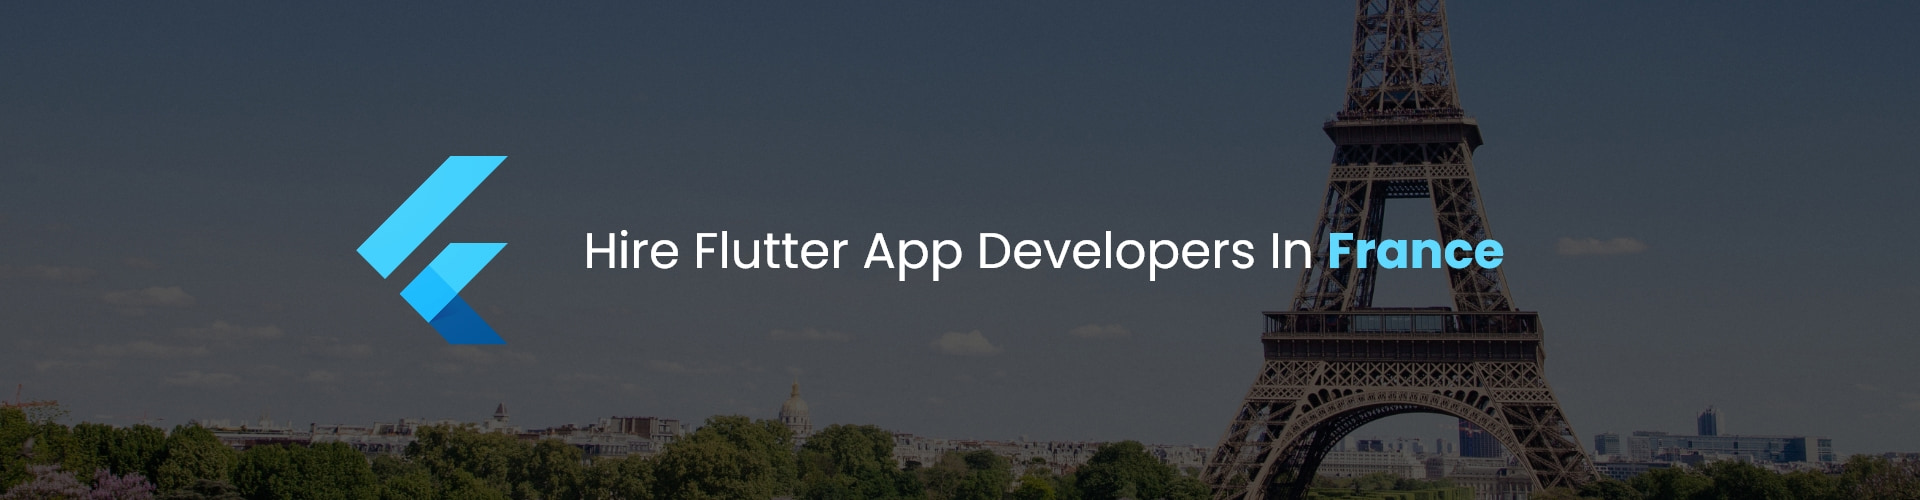 hire flutter app developers in france